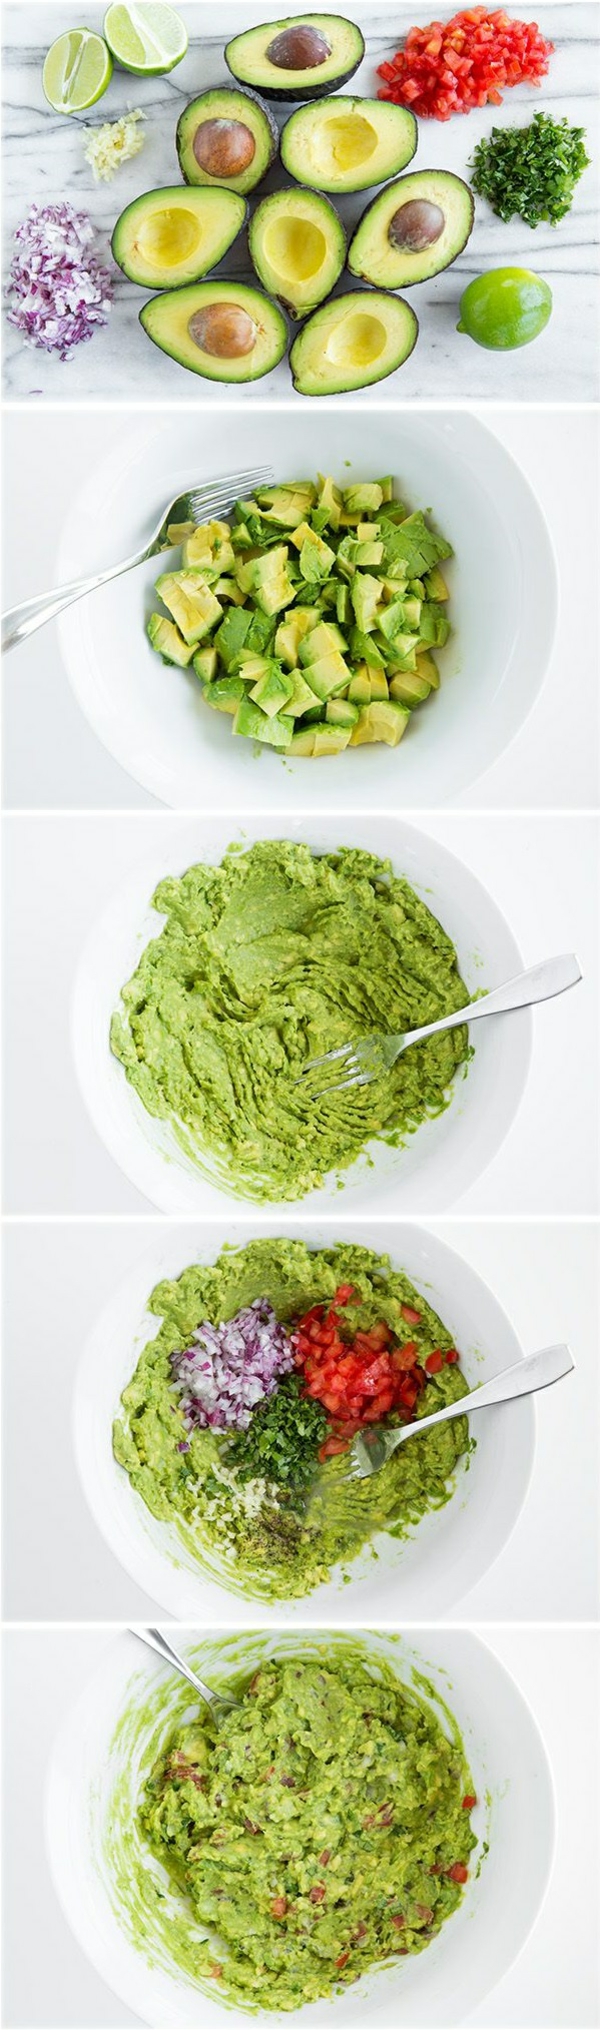 Hummus itse tekee hummista syömään terveellistä guacamolia